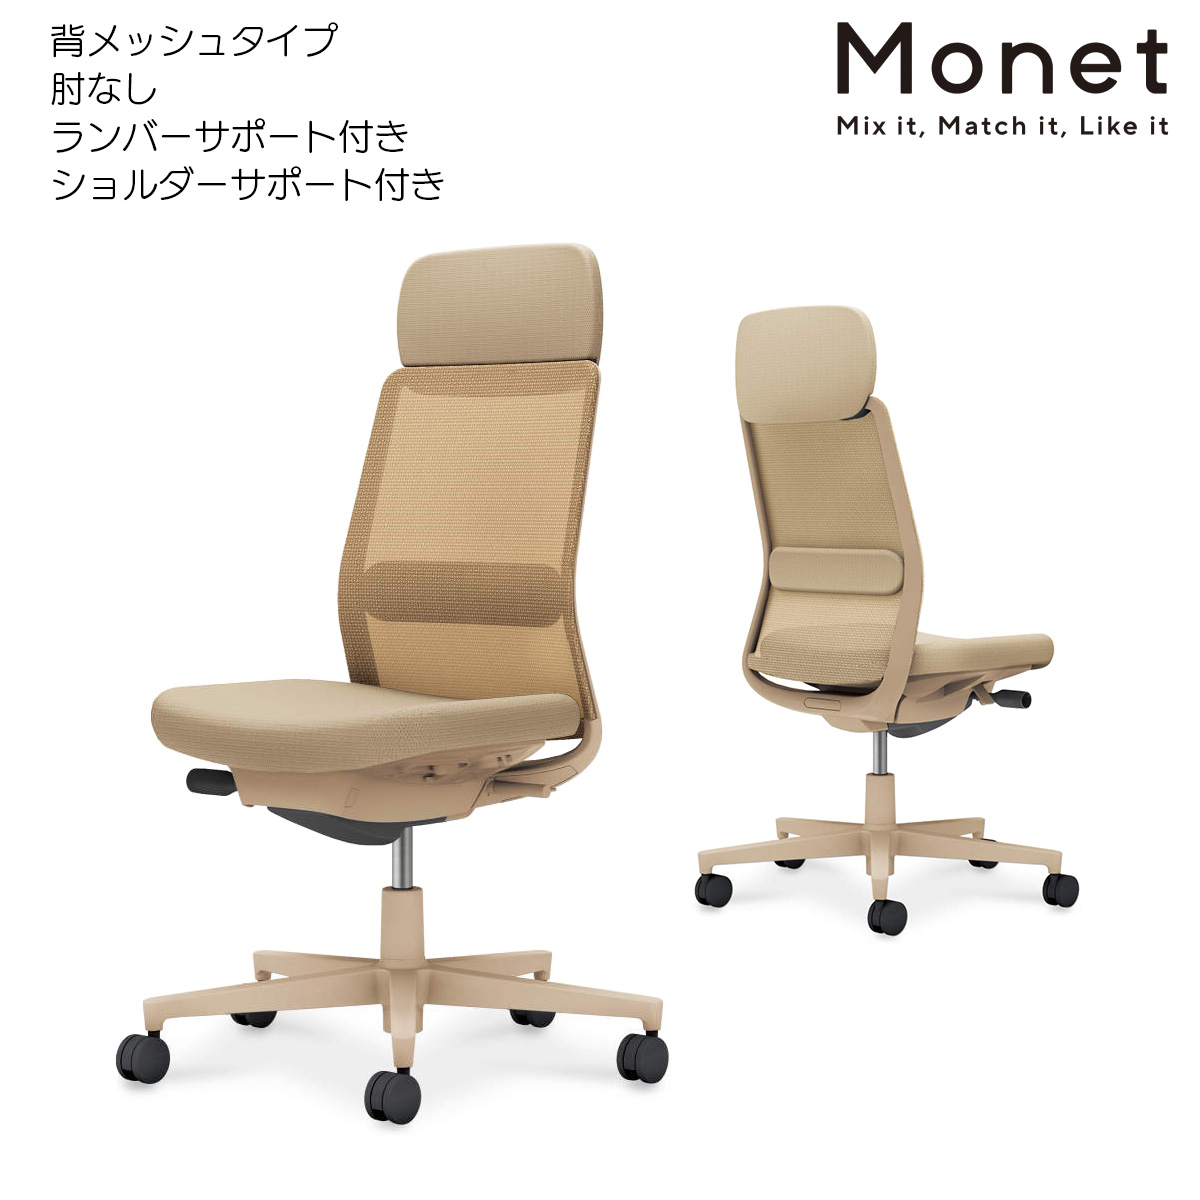 コクヨ デスクチェア Monet モネット C03-Z103 - デスクチェア